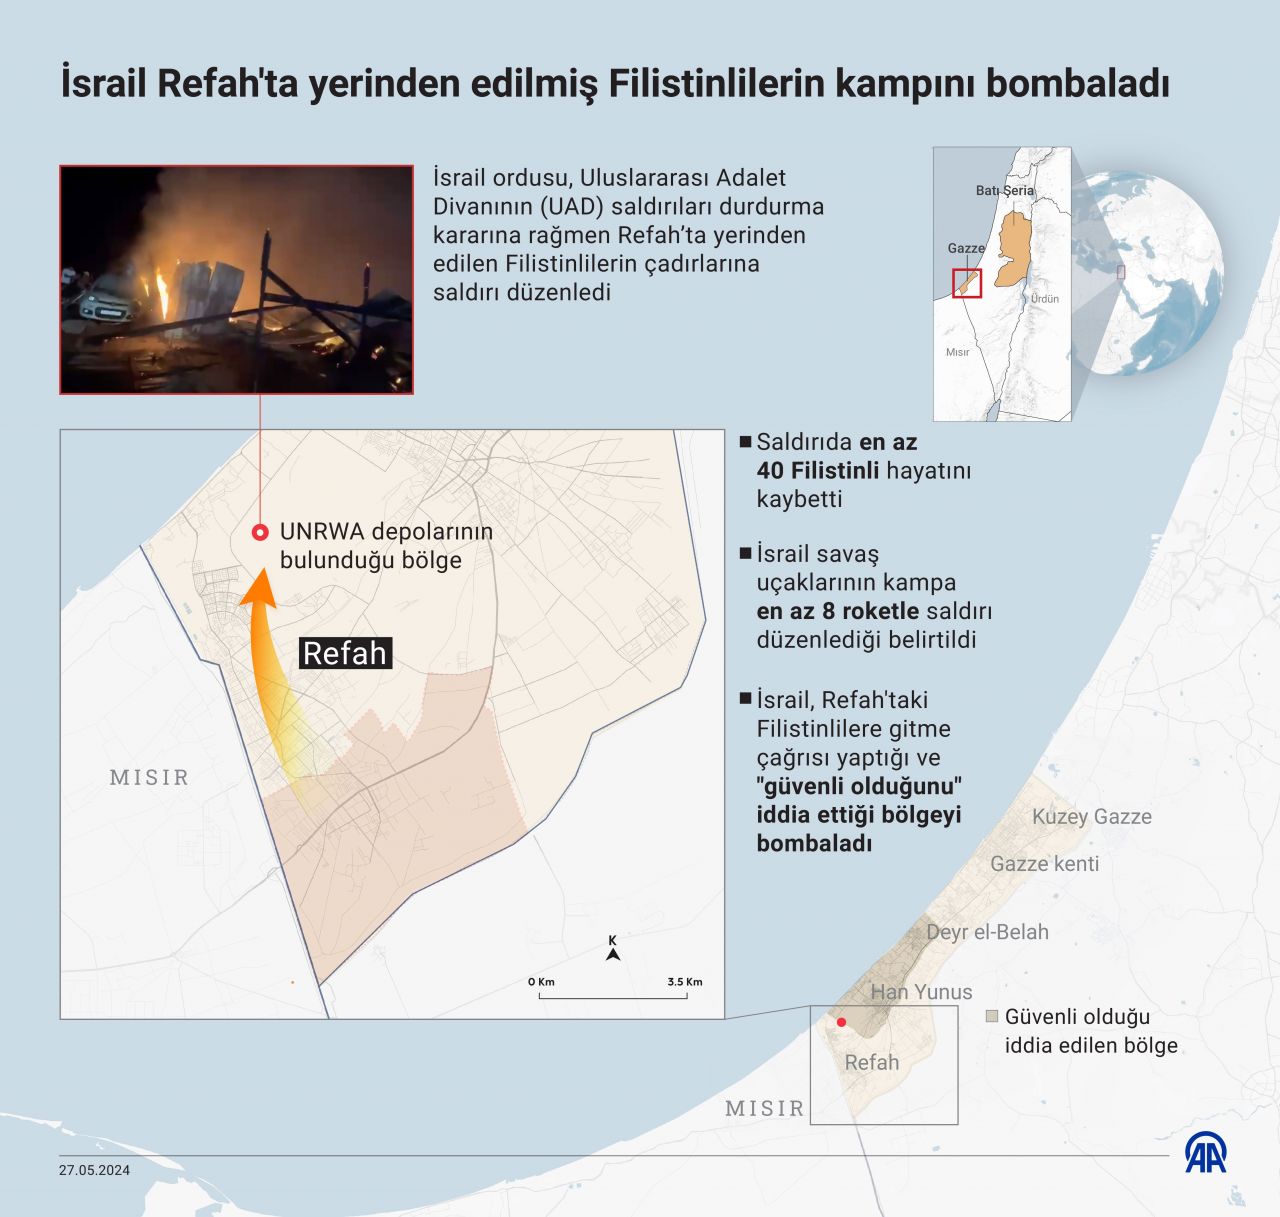 Netanyahu'dan Refah'taki çadır yakılması için skandal açıklama geldi - 2. Resim